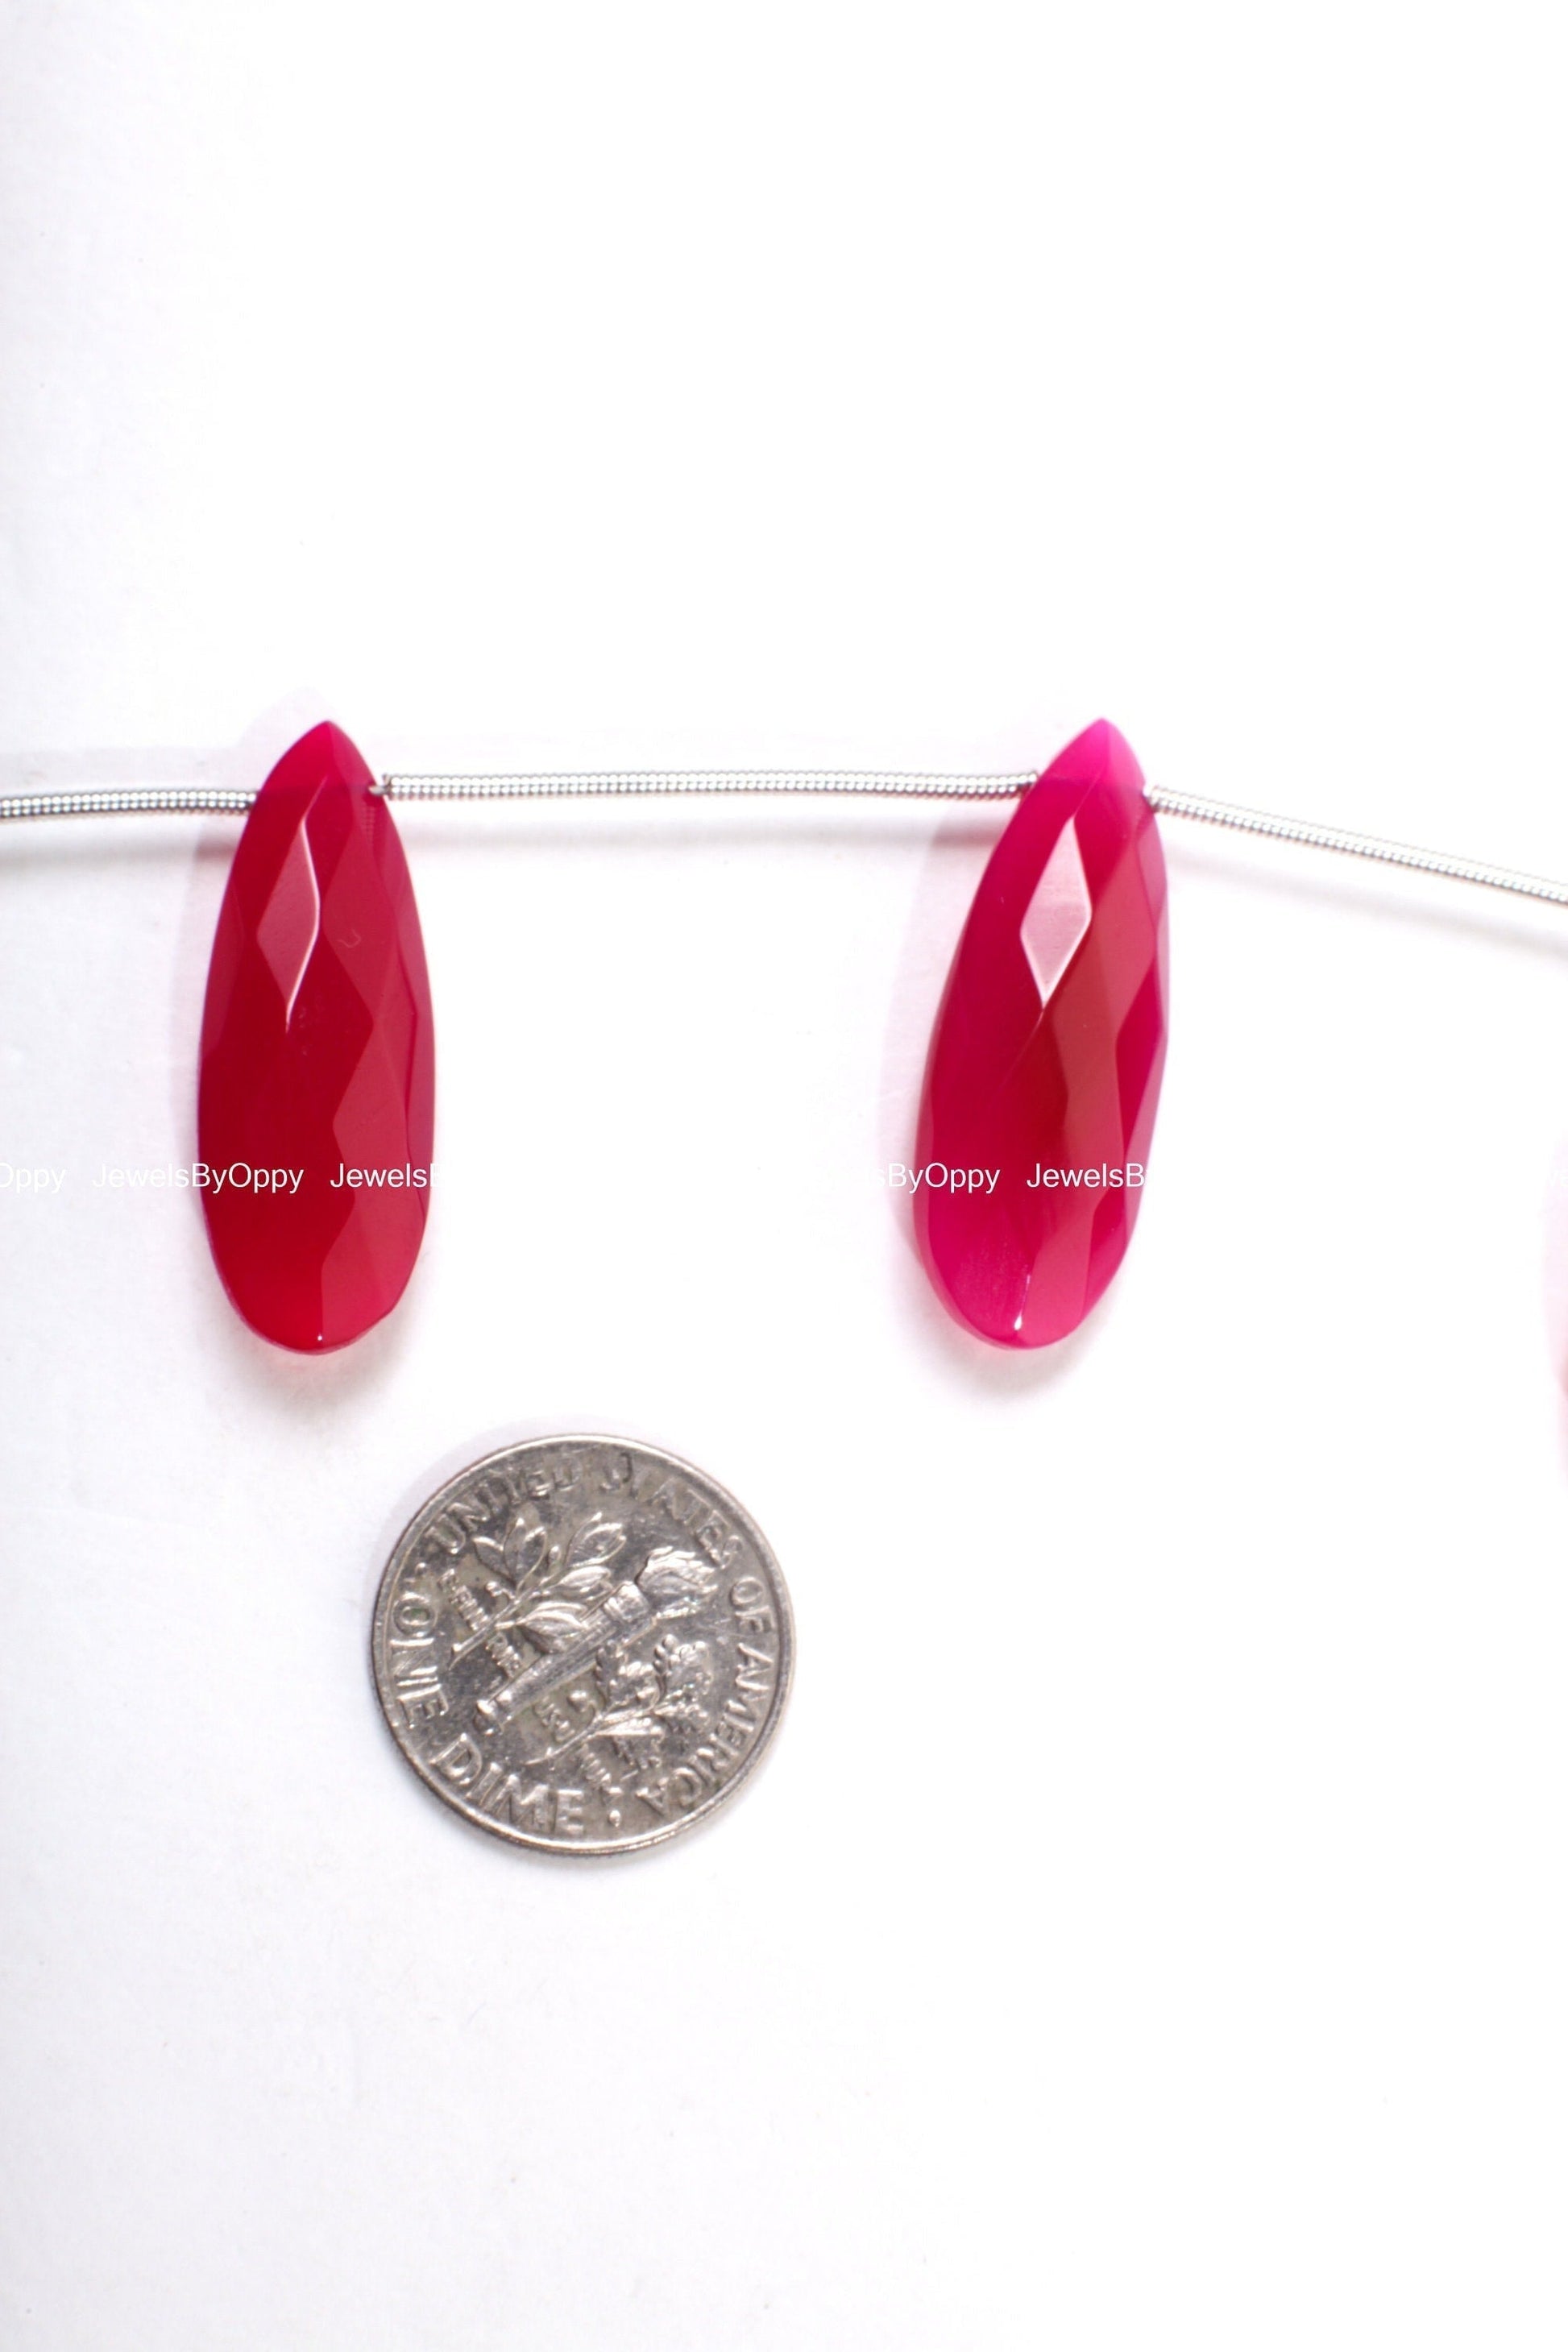 Fuchsia Hot Pink Chalcedony Faceted Long Pear Drop 26x8-28x11mm, Rich Pink Jewelry Making Bracelet, Necklace Earrings Gemstone Teardrop Bead